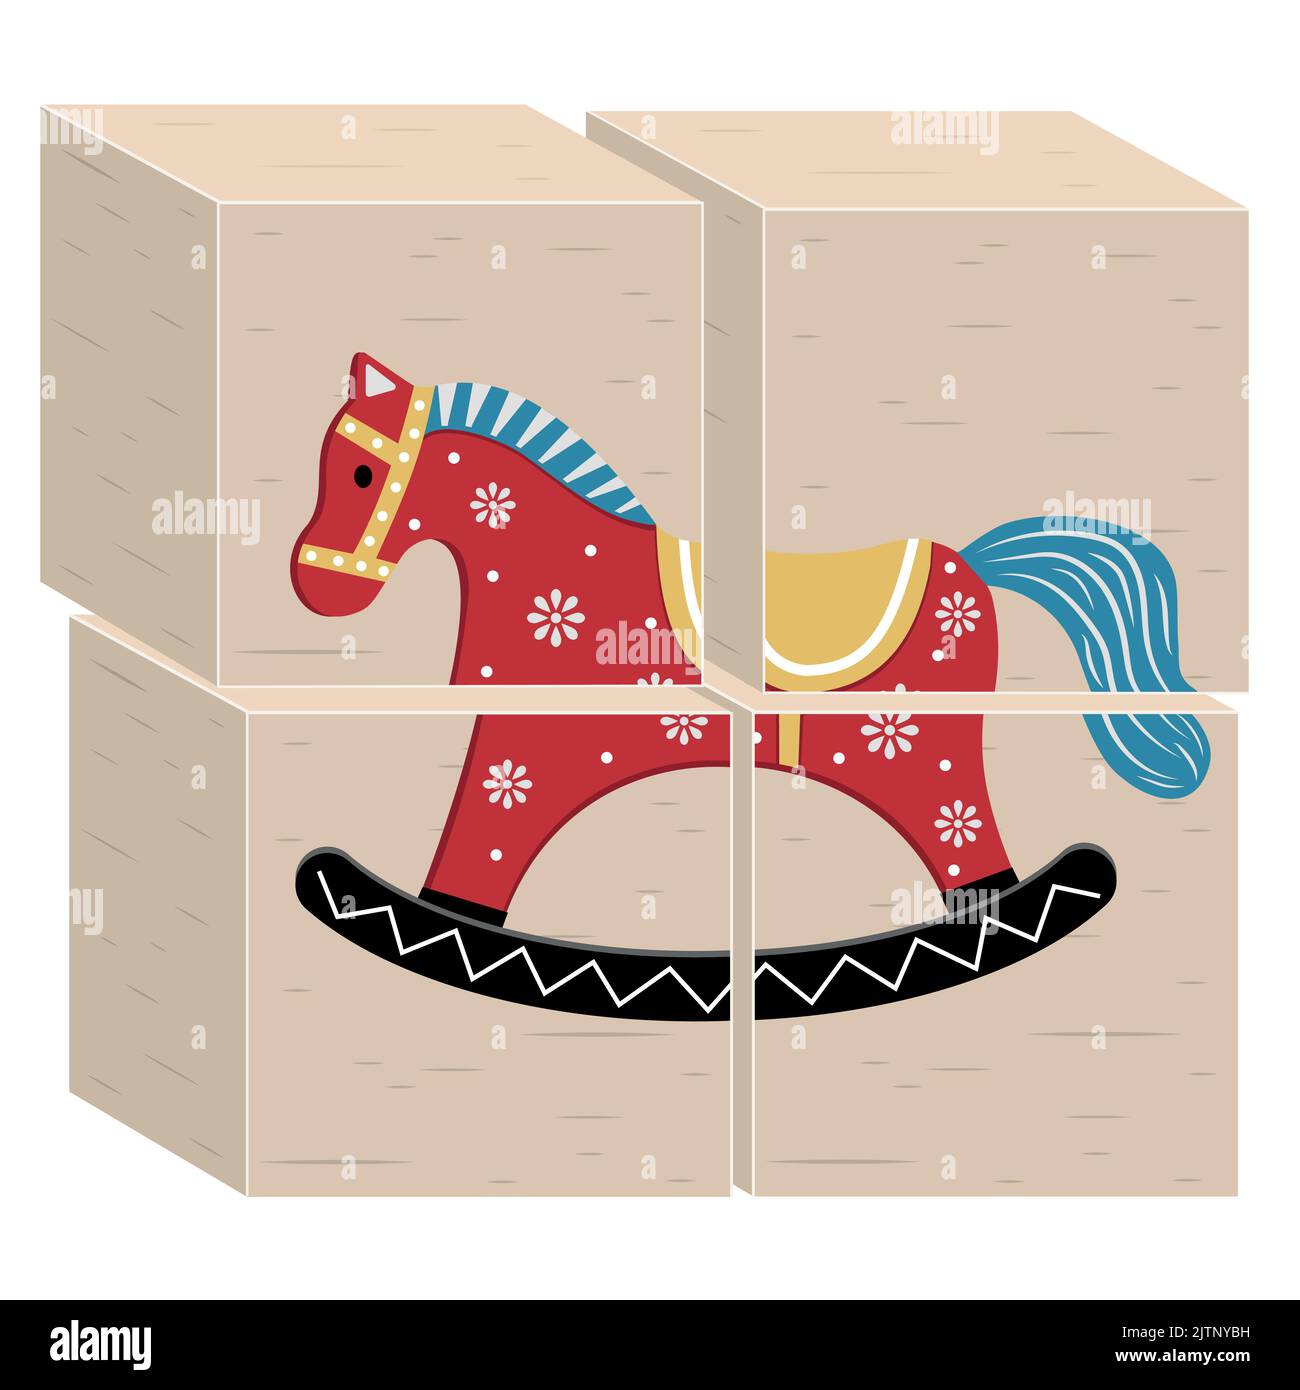 Holz Lernspielzeug für Kinder Würfel mit einem Pferd, Farbe Vektor Illustration. Stock Vektor